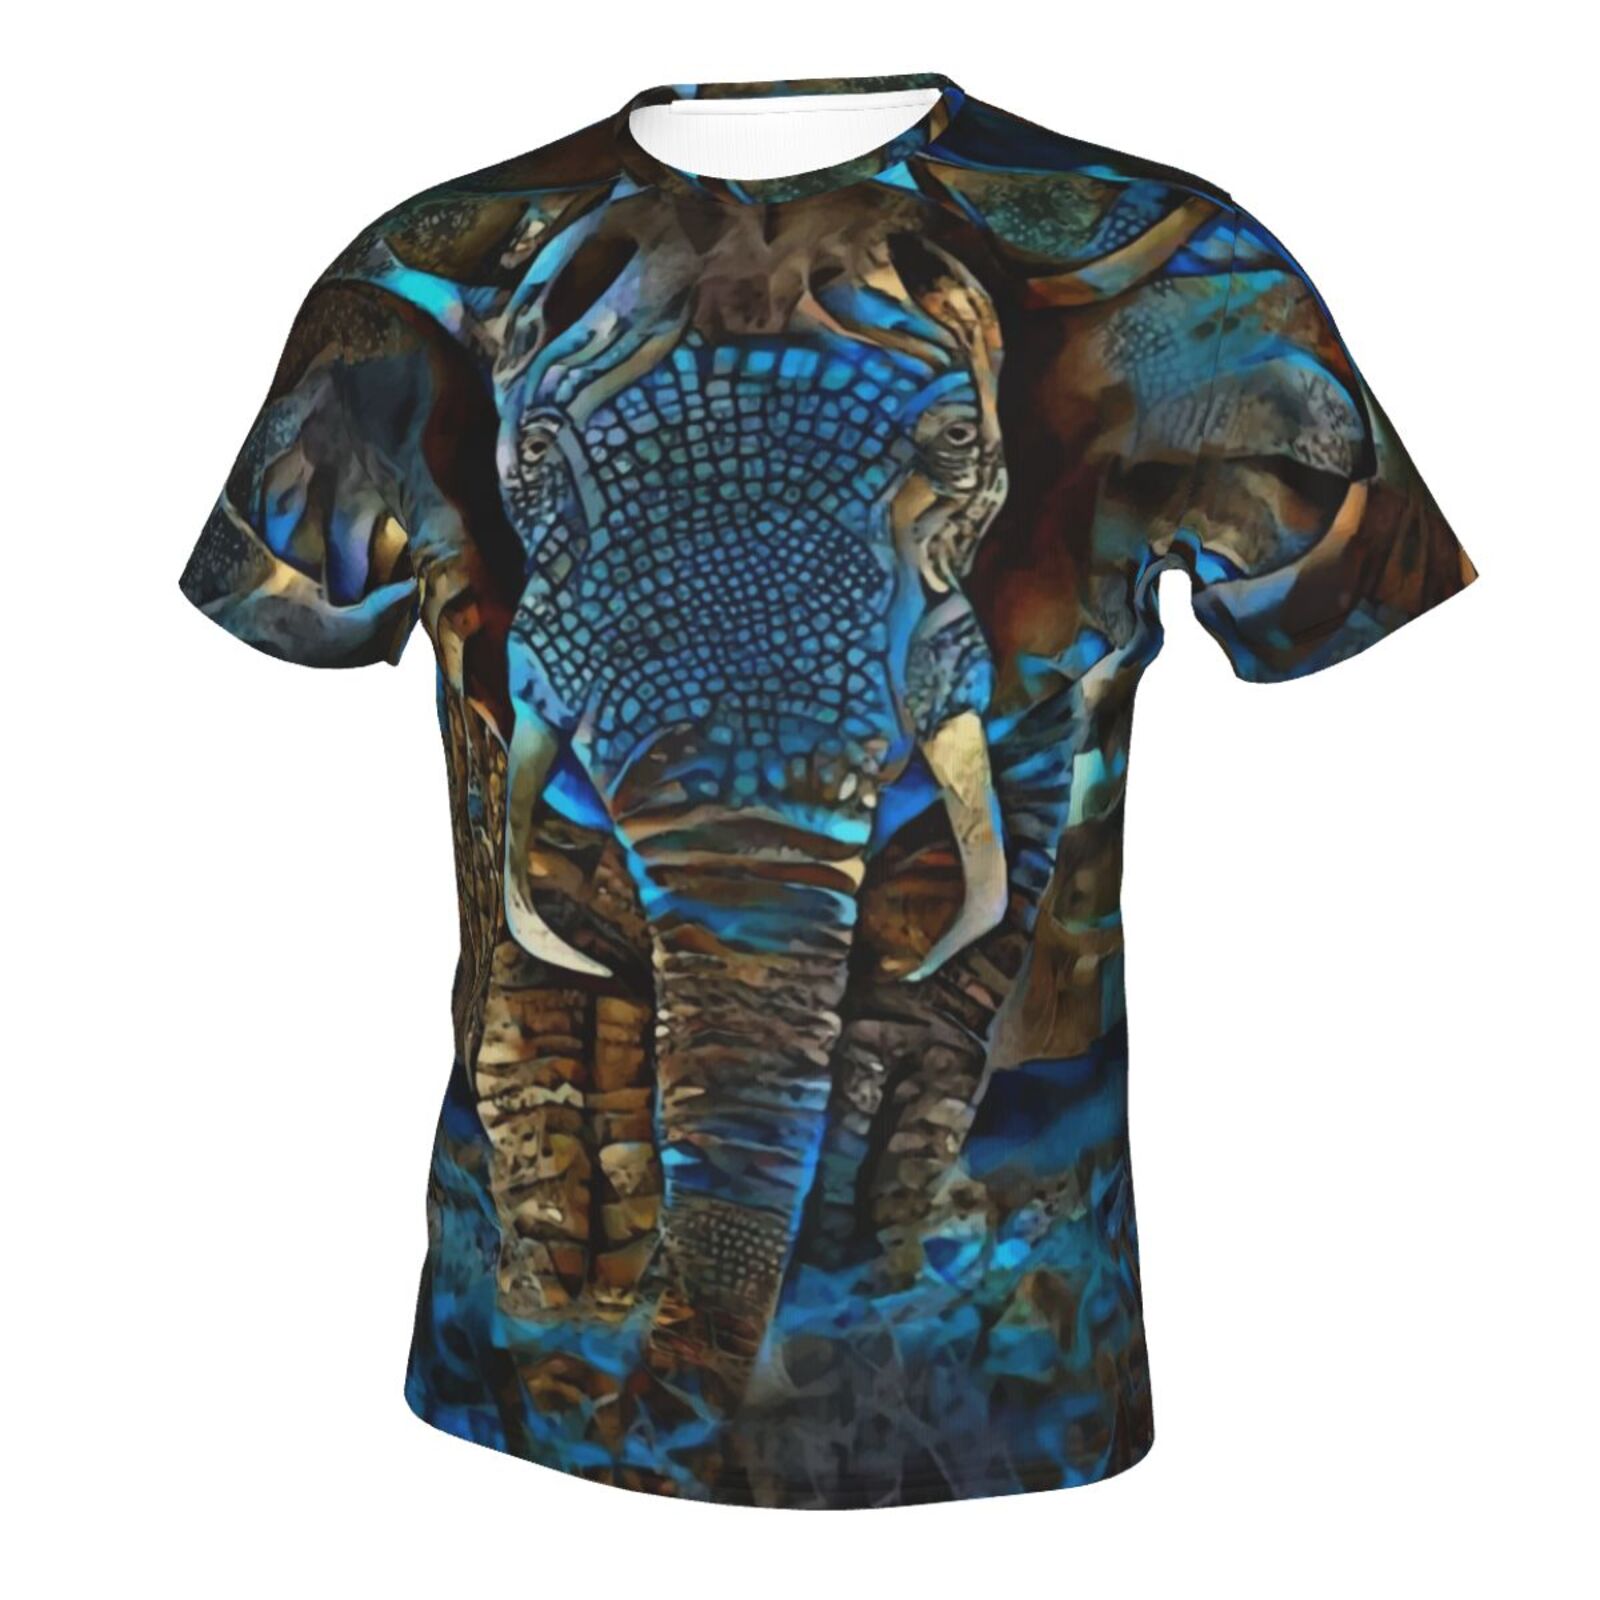 Elefant Braun Blau Medien Mischen Elemente Klassisch T Shirt